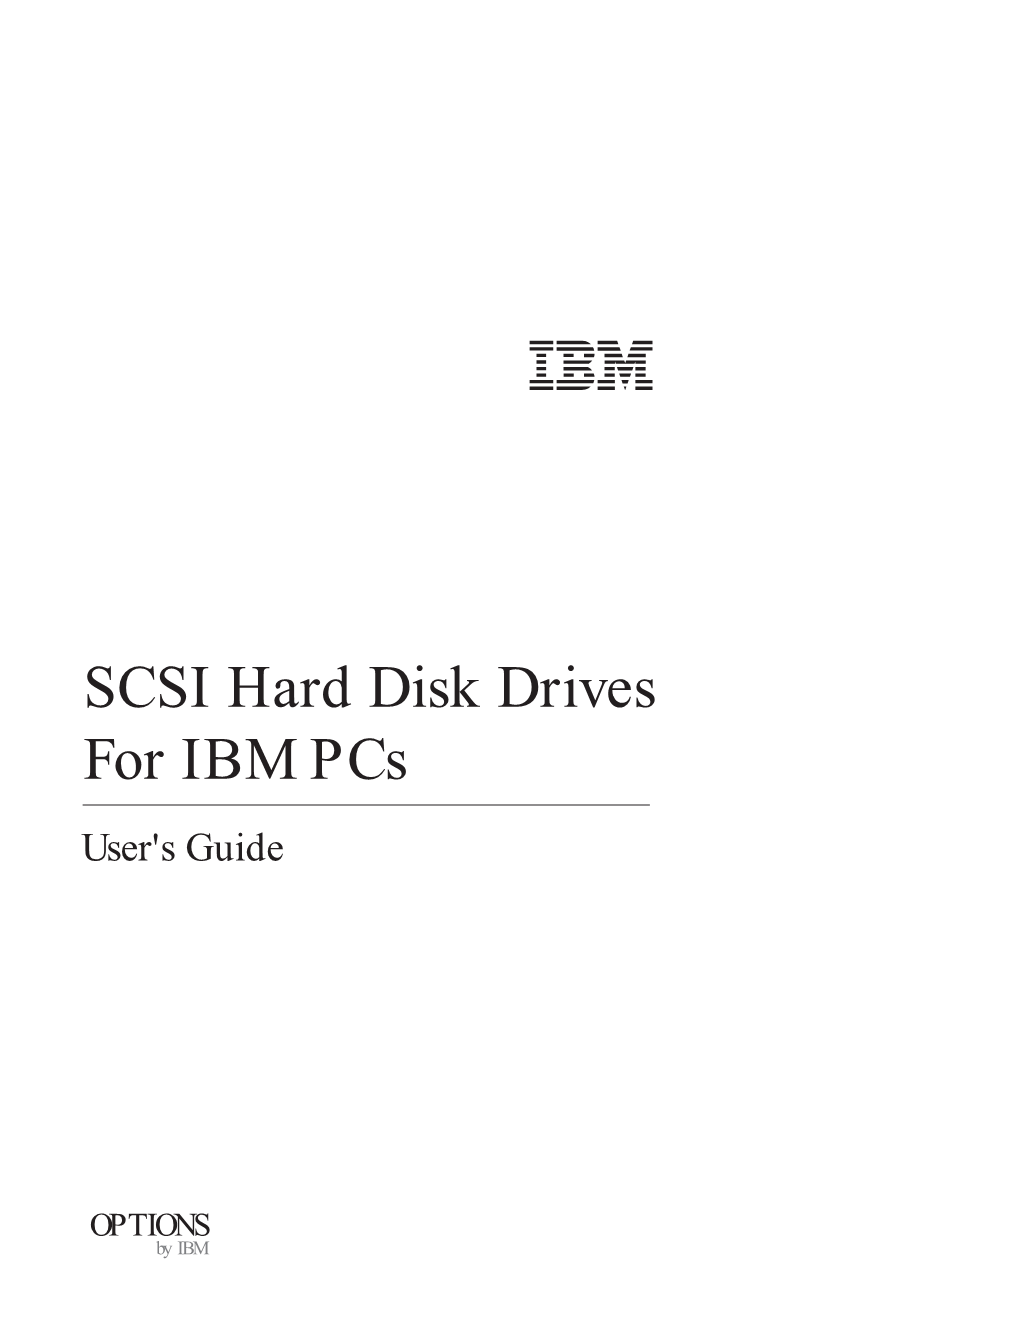 SCSI Hard Disk Drives for IBM Pcs User's Guide